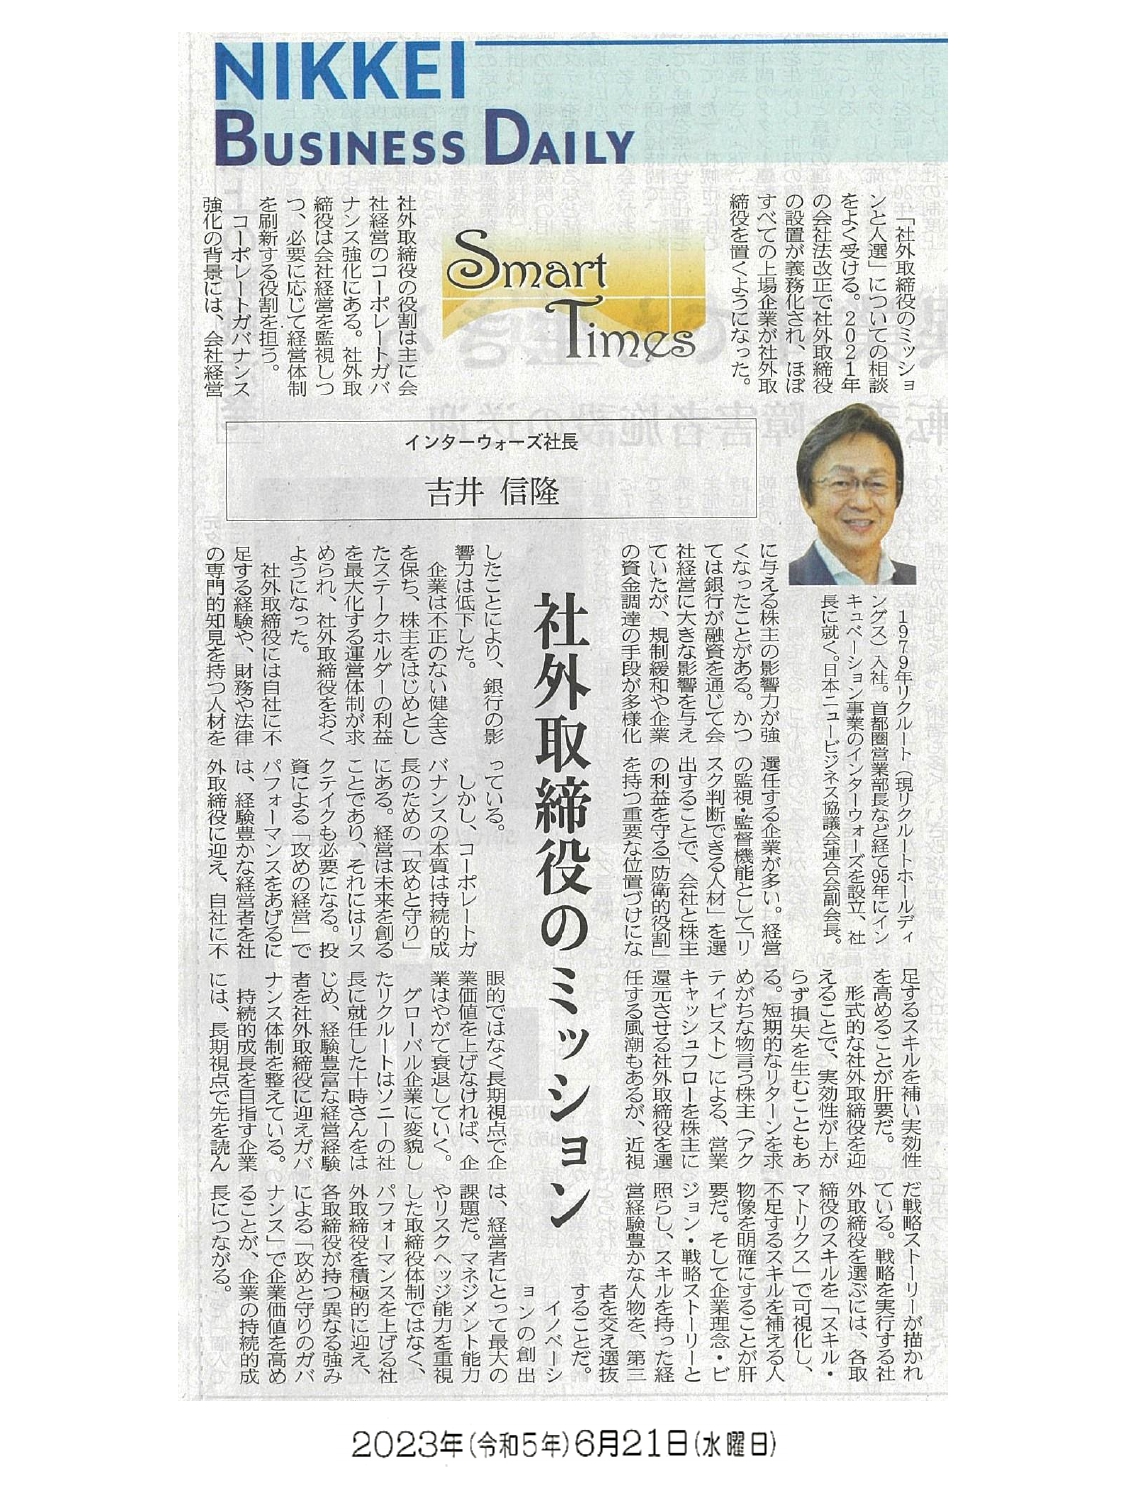 日経産業新聞 Smart Times「社外取締役のミッション」